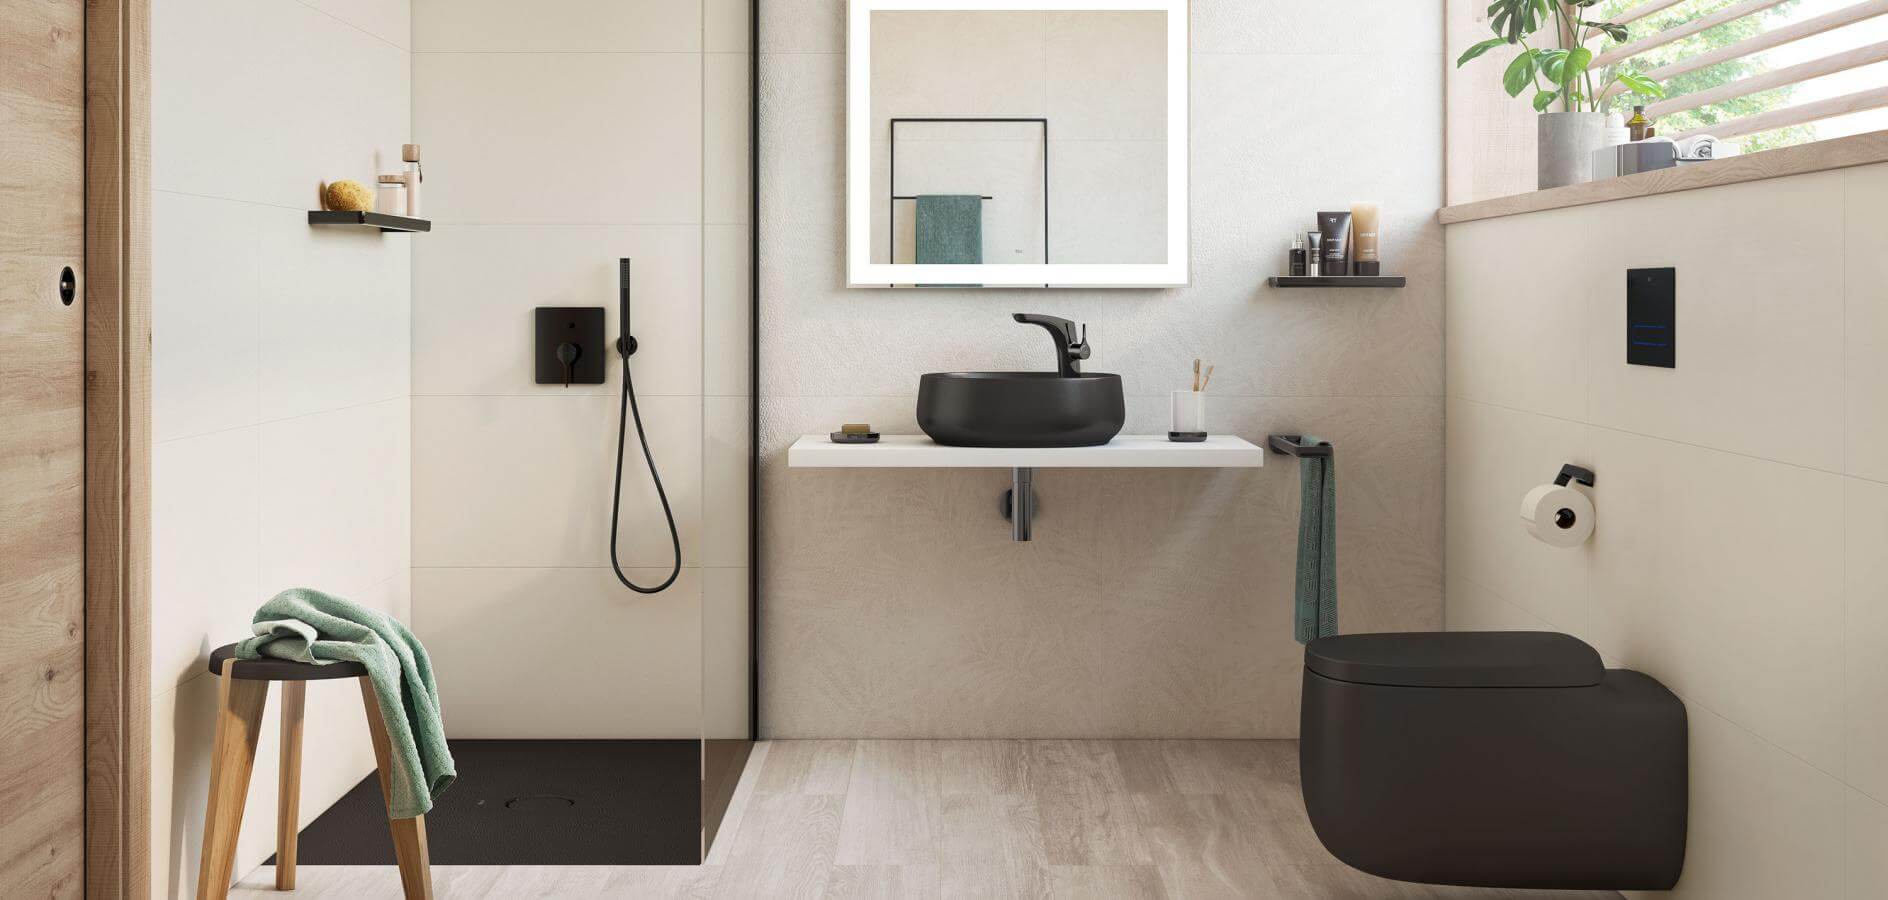 banos pequenos baldosas ceramicas - ¿Qué baldosas funcionan mejor en baños pequeños?